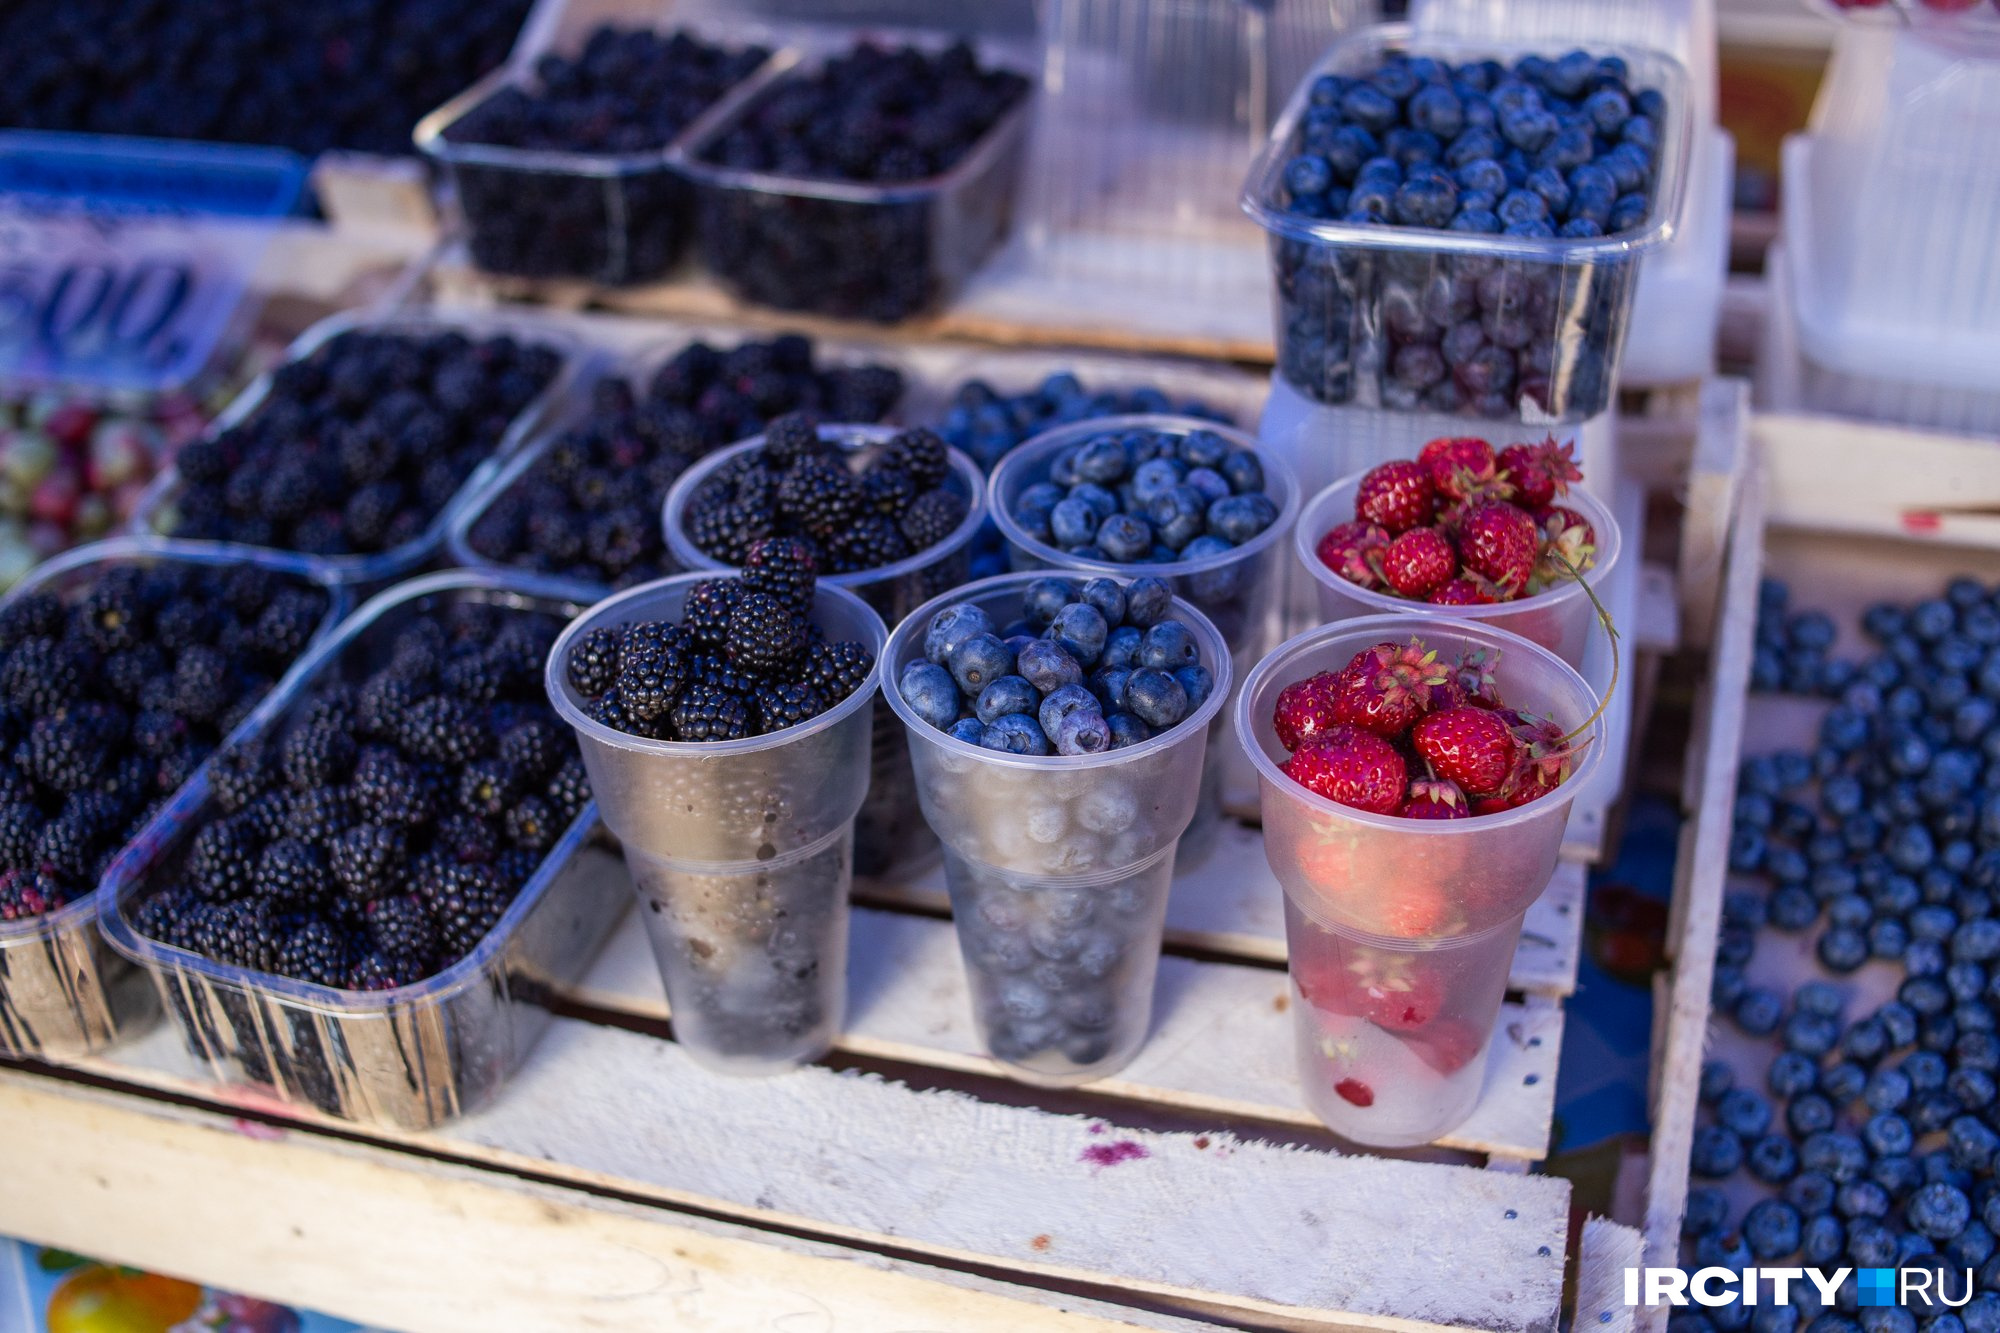 Купить ягоду на рынке можно в разных объемах